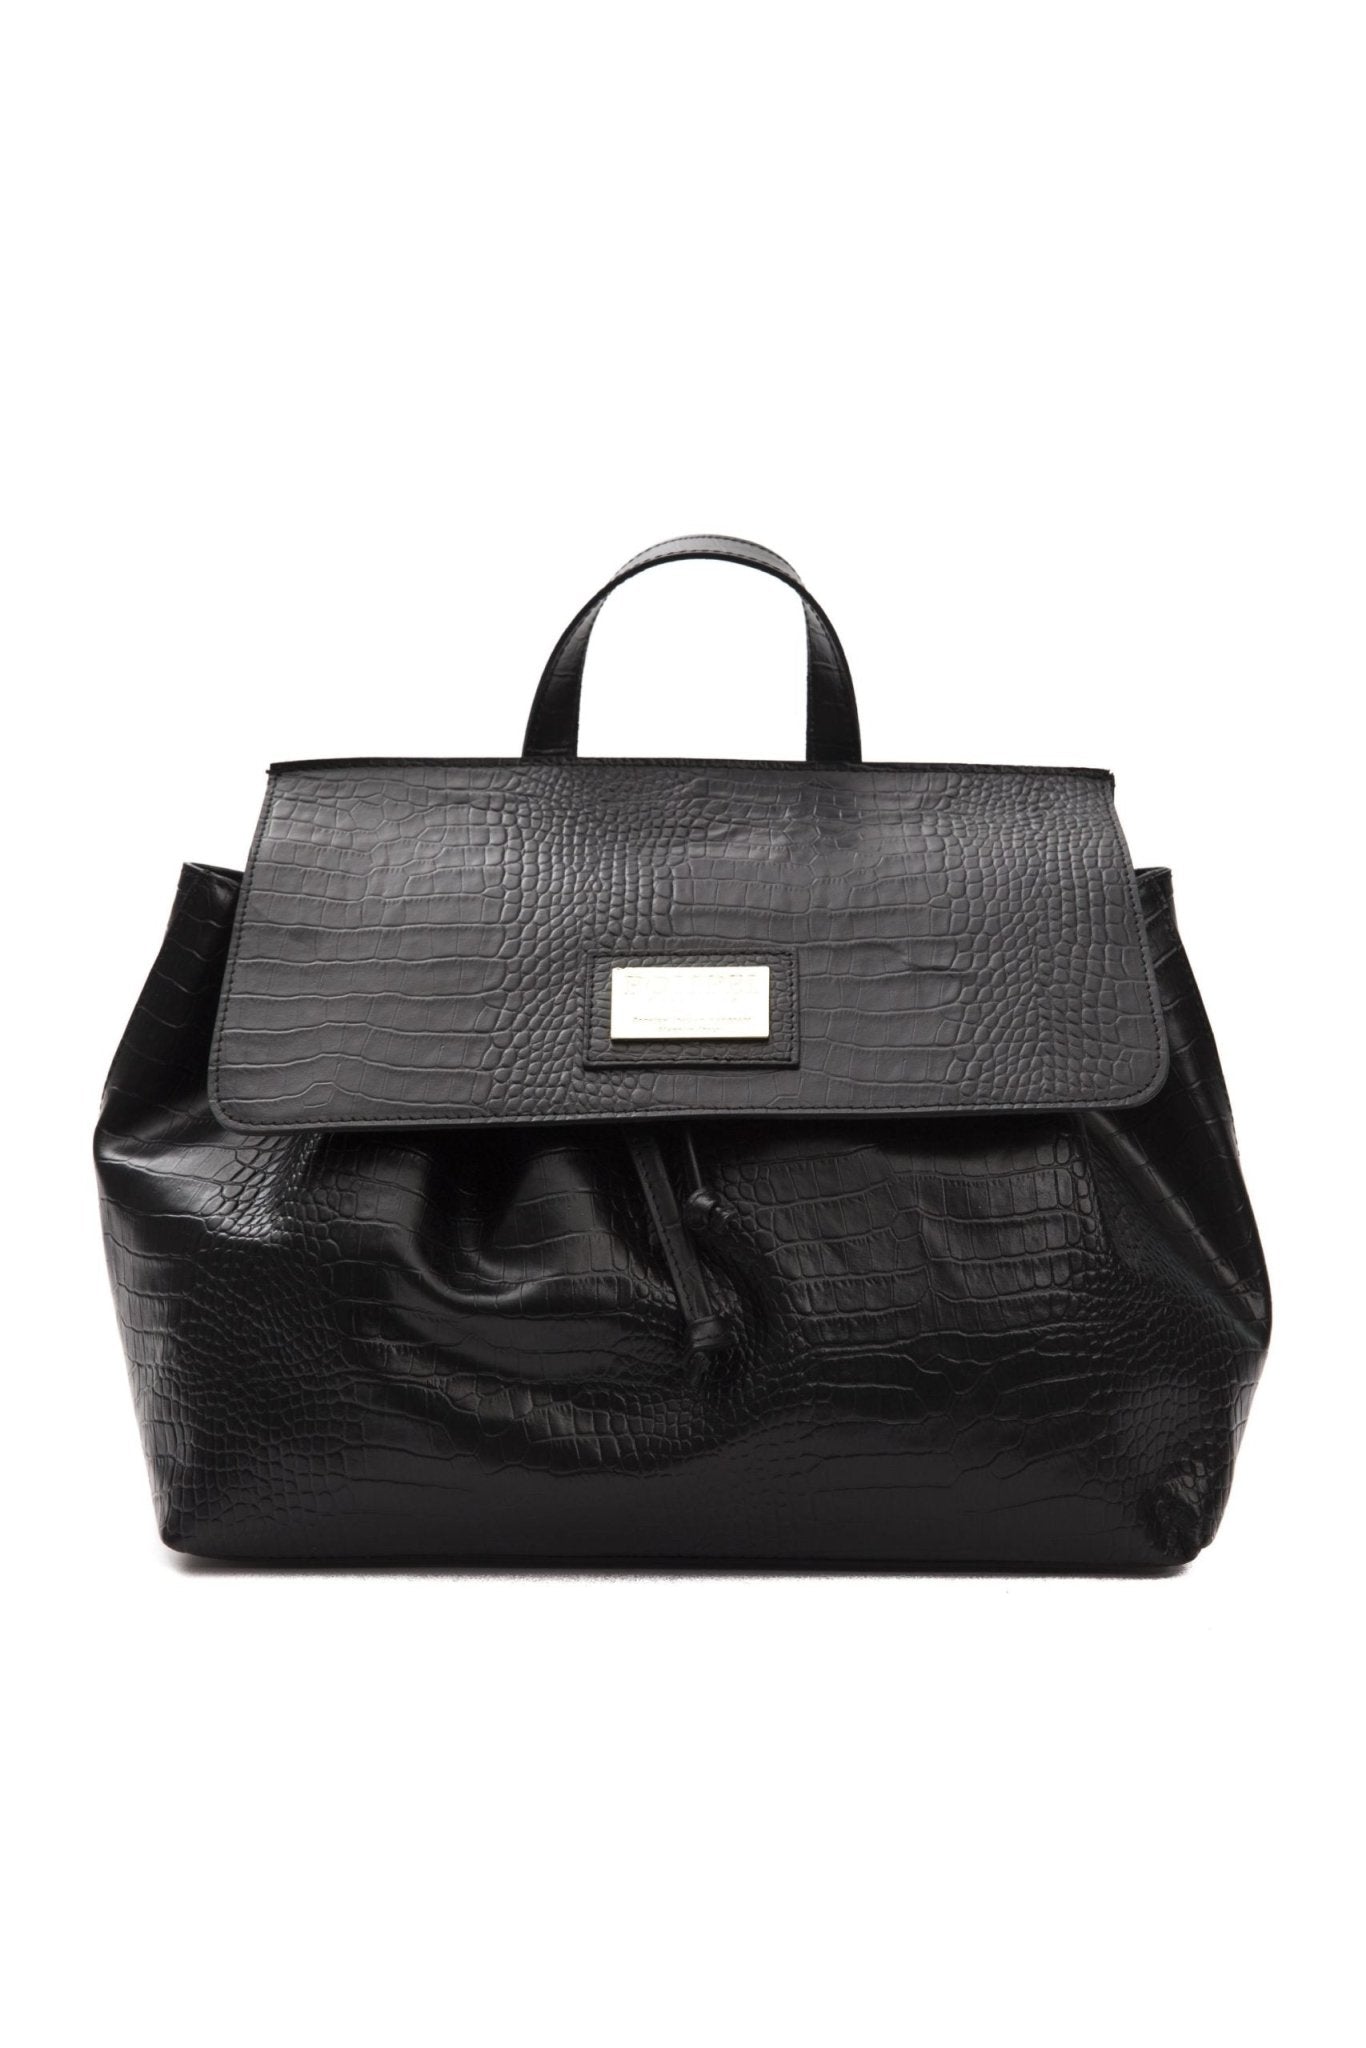 Pompei Donatella Black Leather Handbag - Fizigo